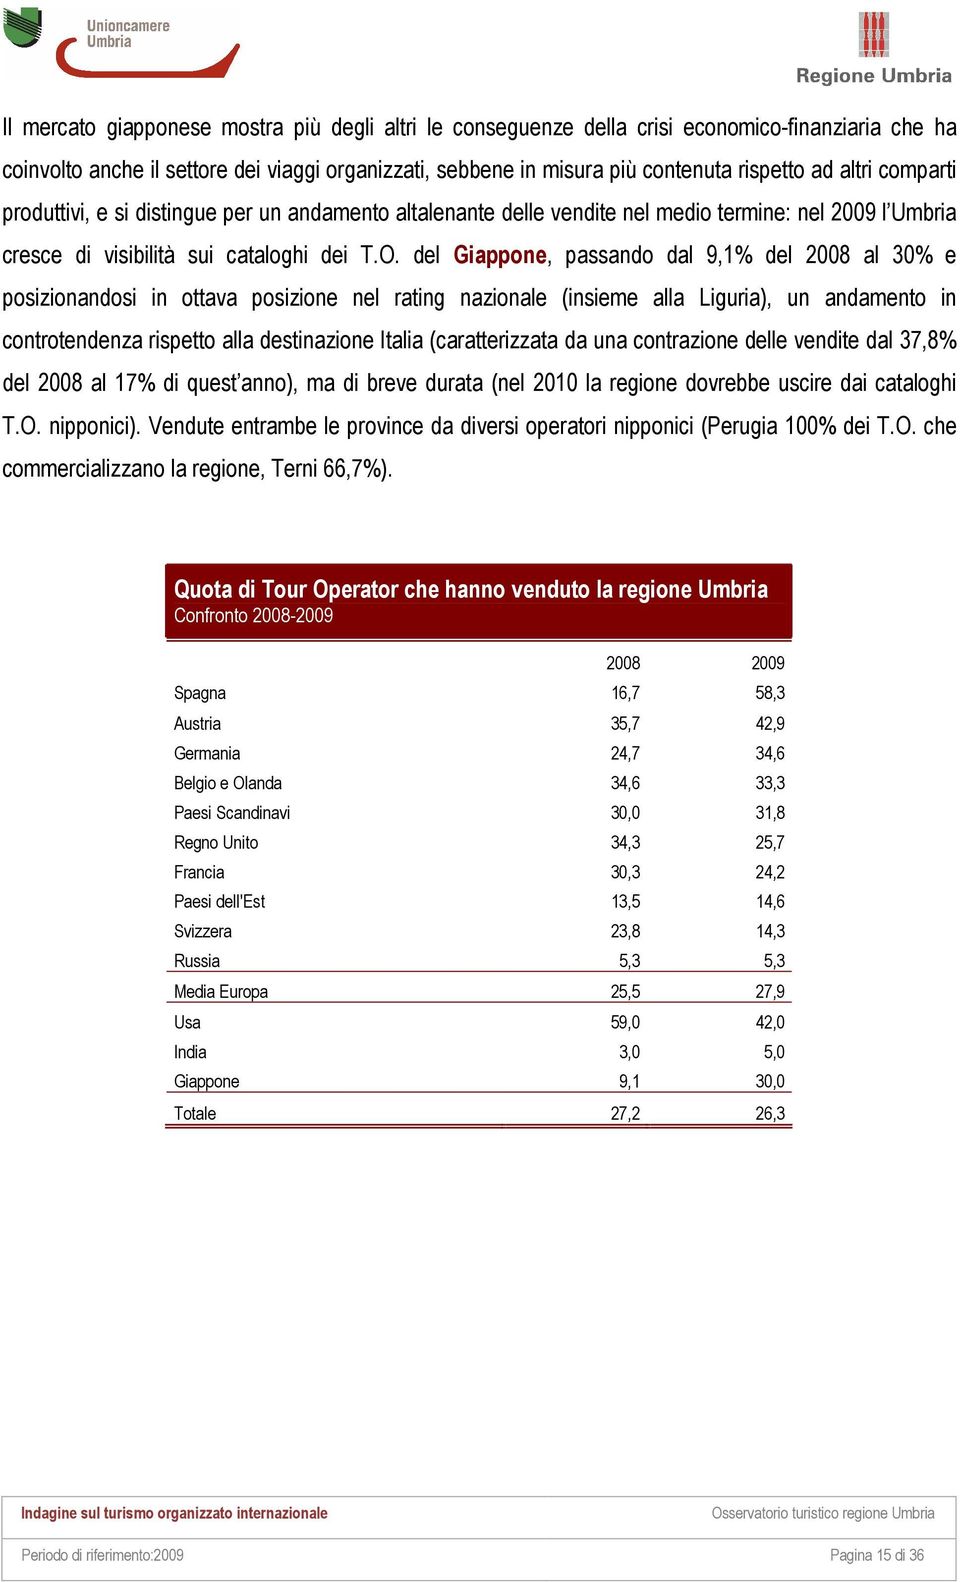 del Giappone, passando dal 9,1% del 2008 al 30% e posizionandosi in ottava posizione nel rating nazionale (insieme alla Liguria), un andamento in controtendenza rispetto alla destinazione Italia